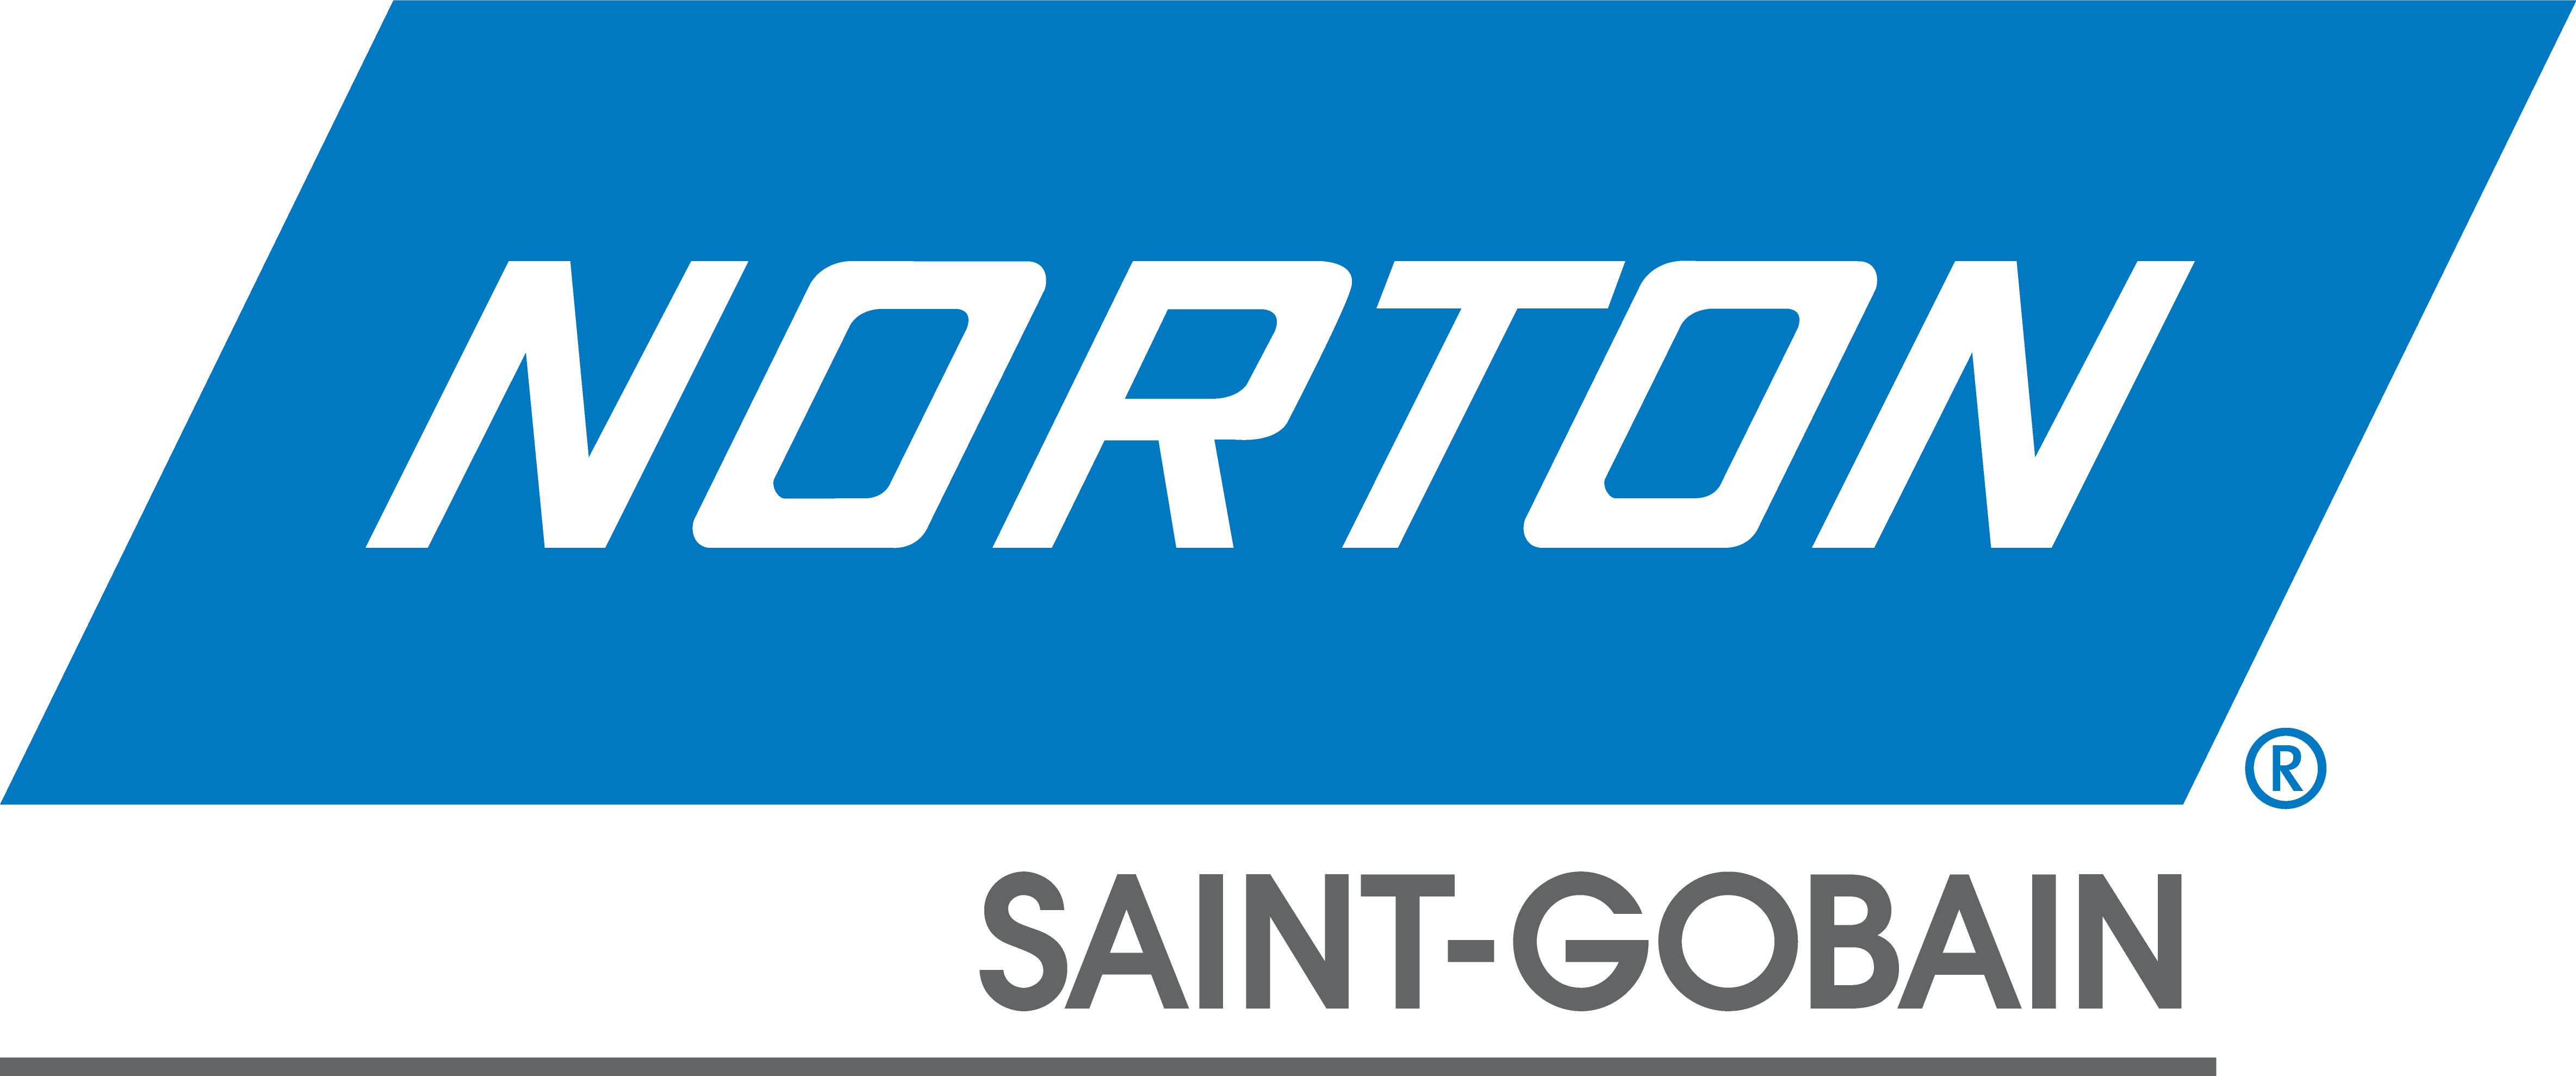 Логотип_norton.png